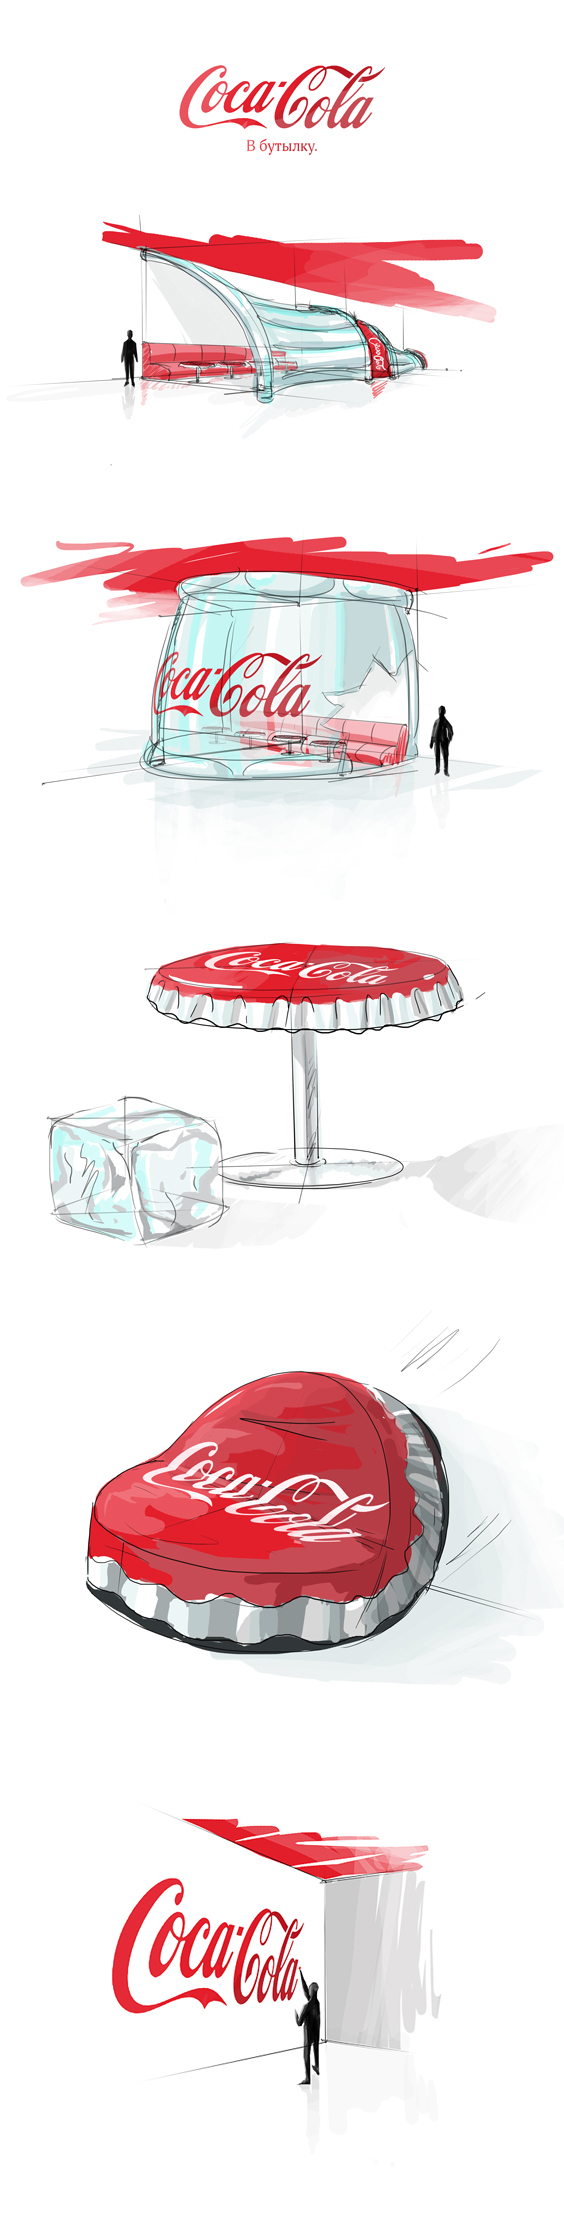 Илюстрации для CocaCola